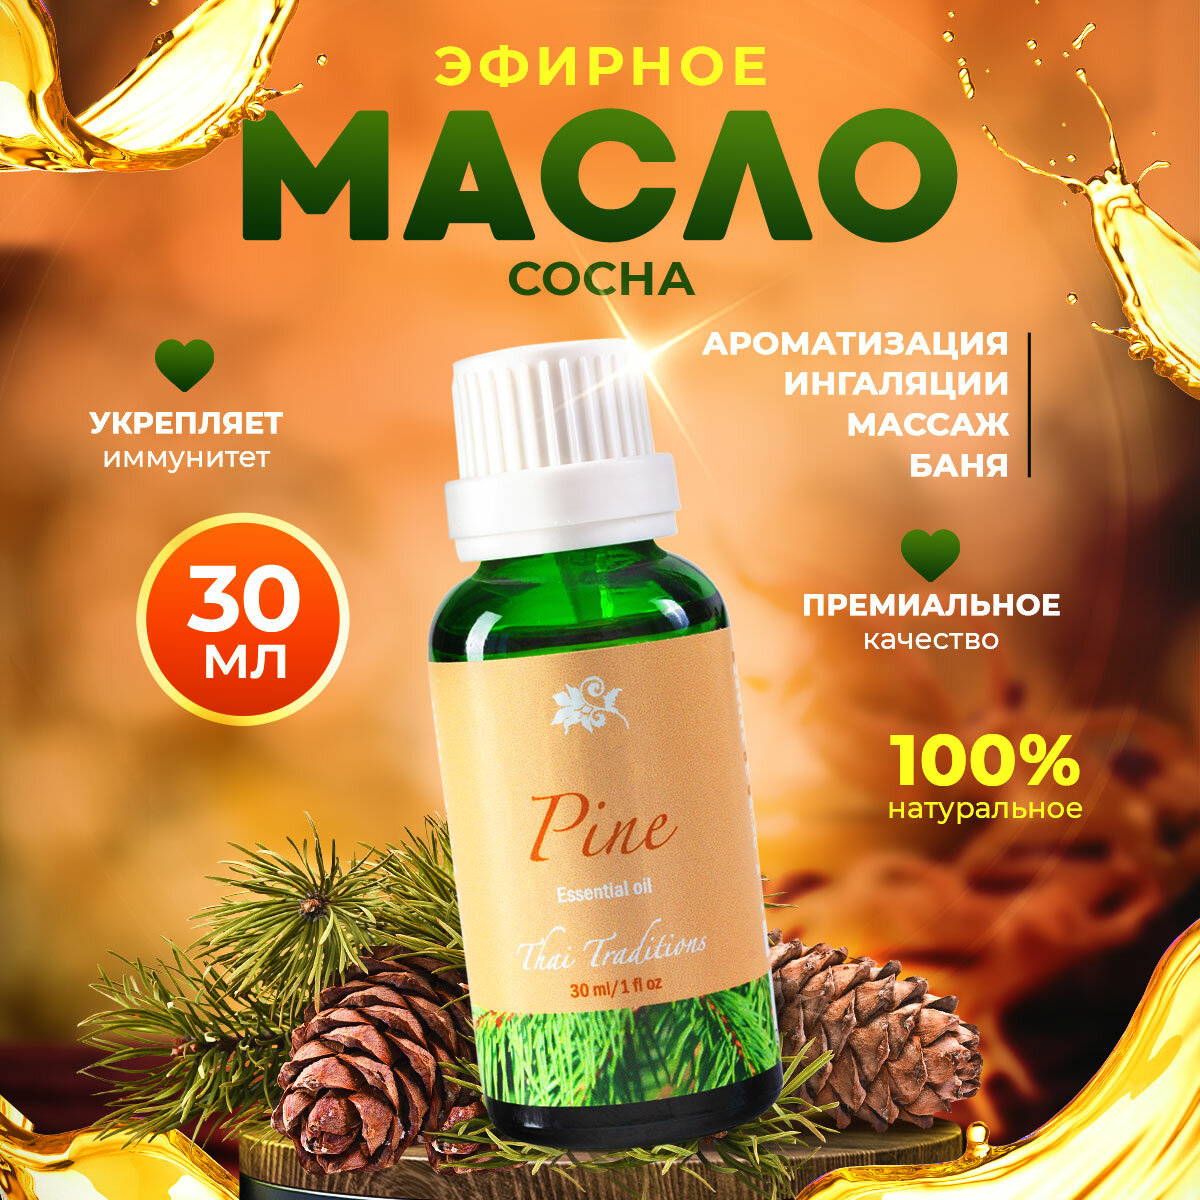 Эфирное масло аромамасло 100% натуральное чистое органическое без примесей для аромалампы для бани для косметики Thai Traditions Сосна, 30 мл.